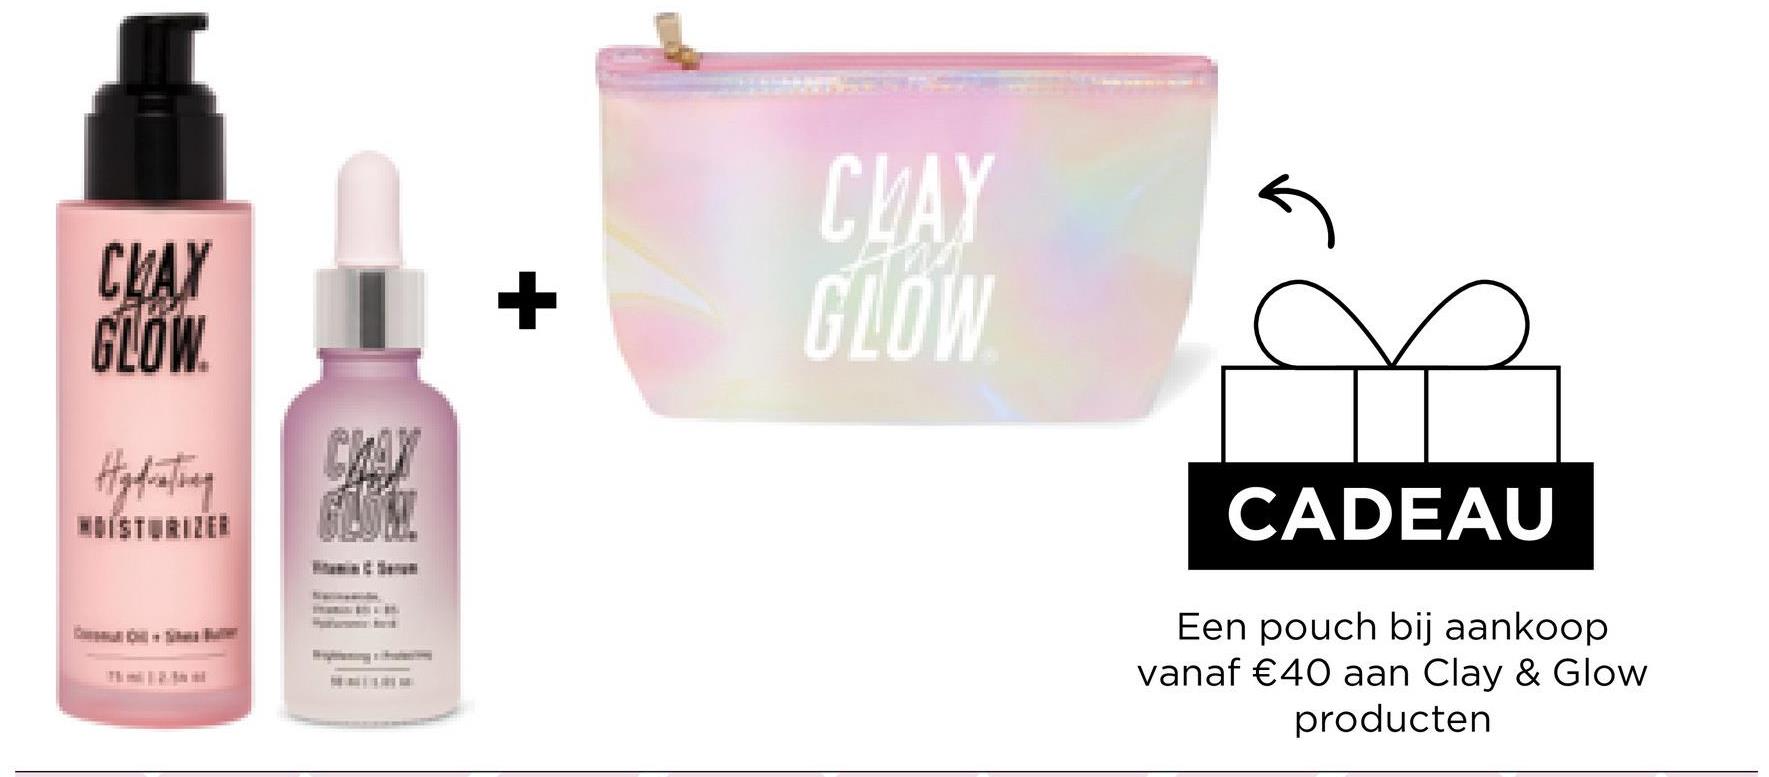 CLAY
GLOW
Hydrating
CHAX
GLÖM!
+
CLAY
GLOW
CADEAU
Een pouch bij aankoop
vanaf €40 aan Clay & Glow
producten